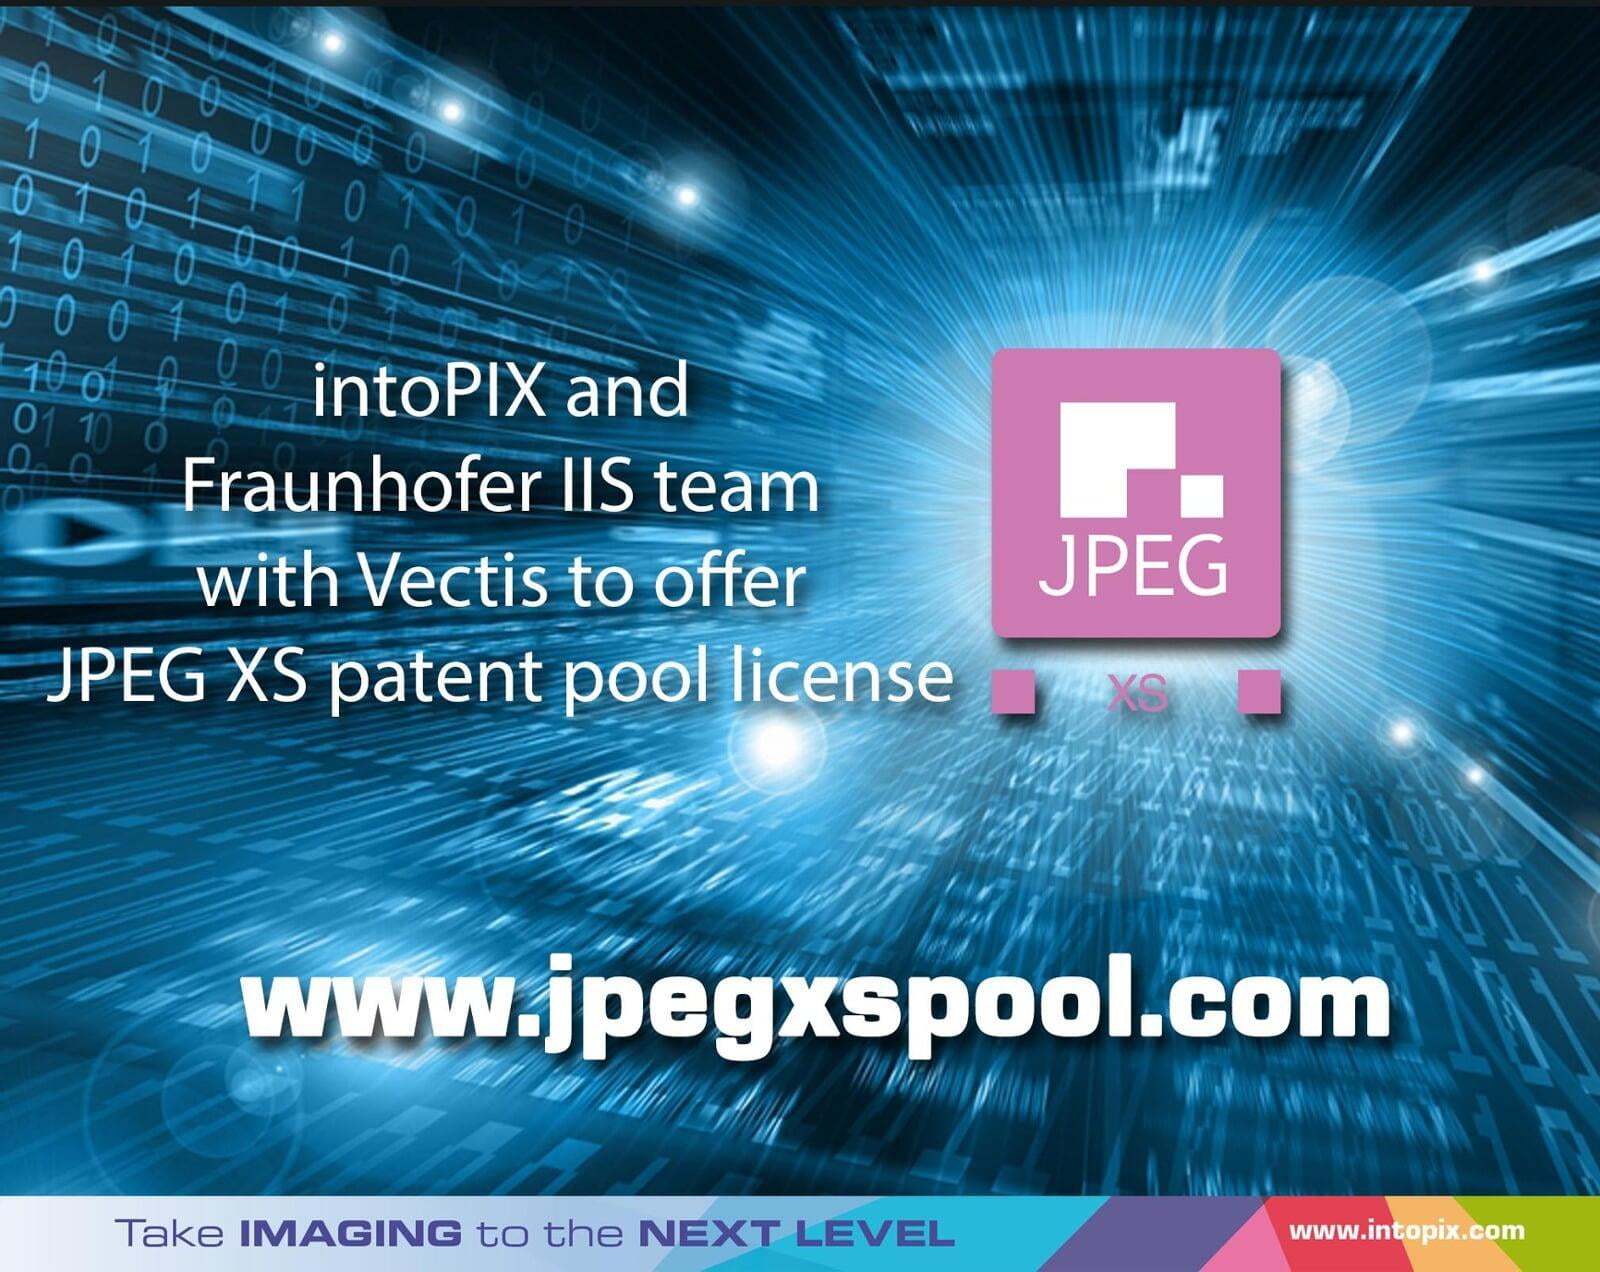 intoPIX et Fraunhofer IIS s'associent à Vectis pour offrir une licence de pool de brevets pour JPEG XS